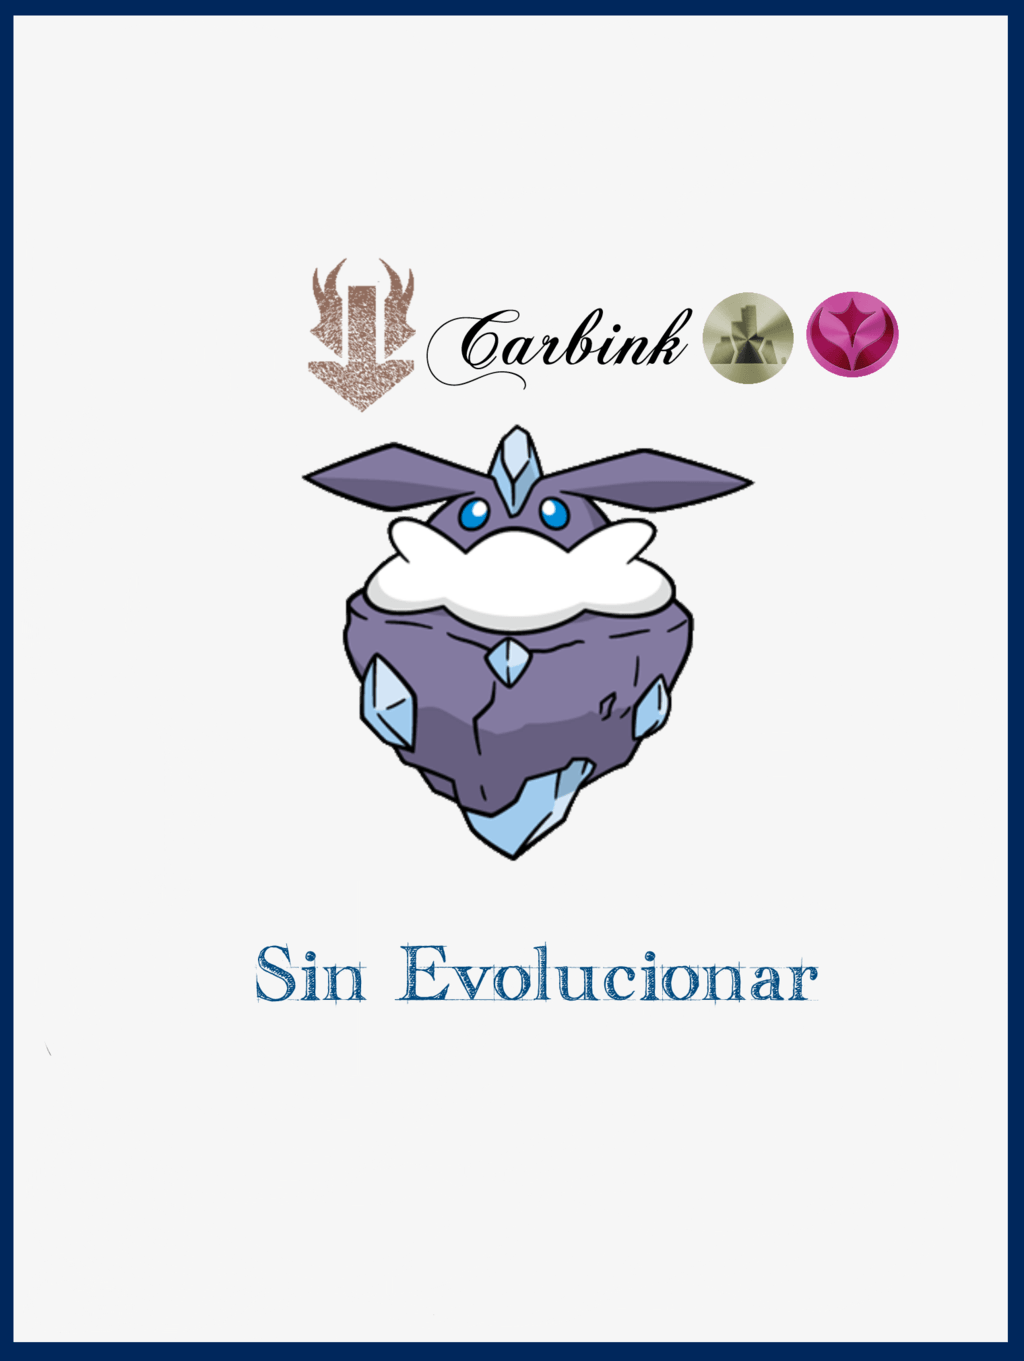 Carbink Evolution Chart